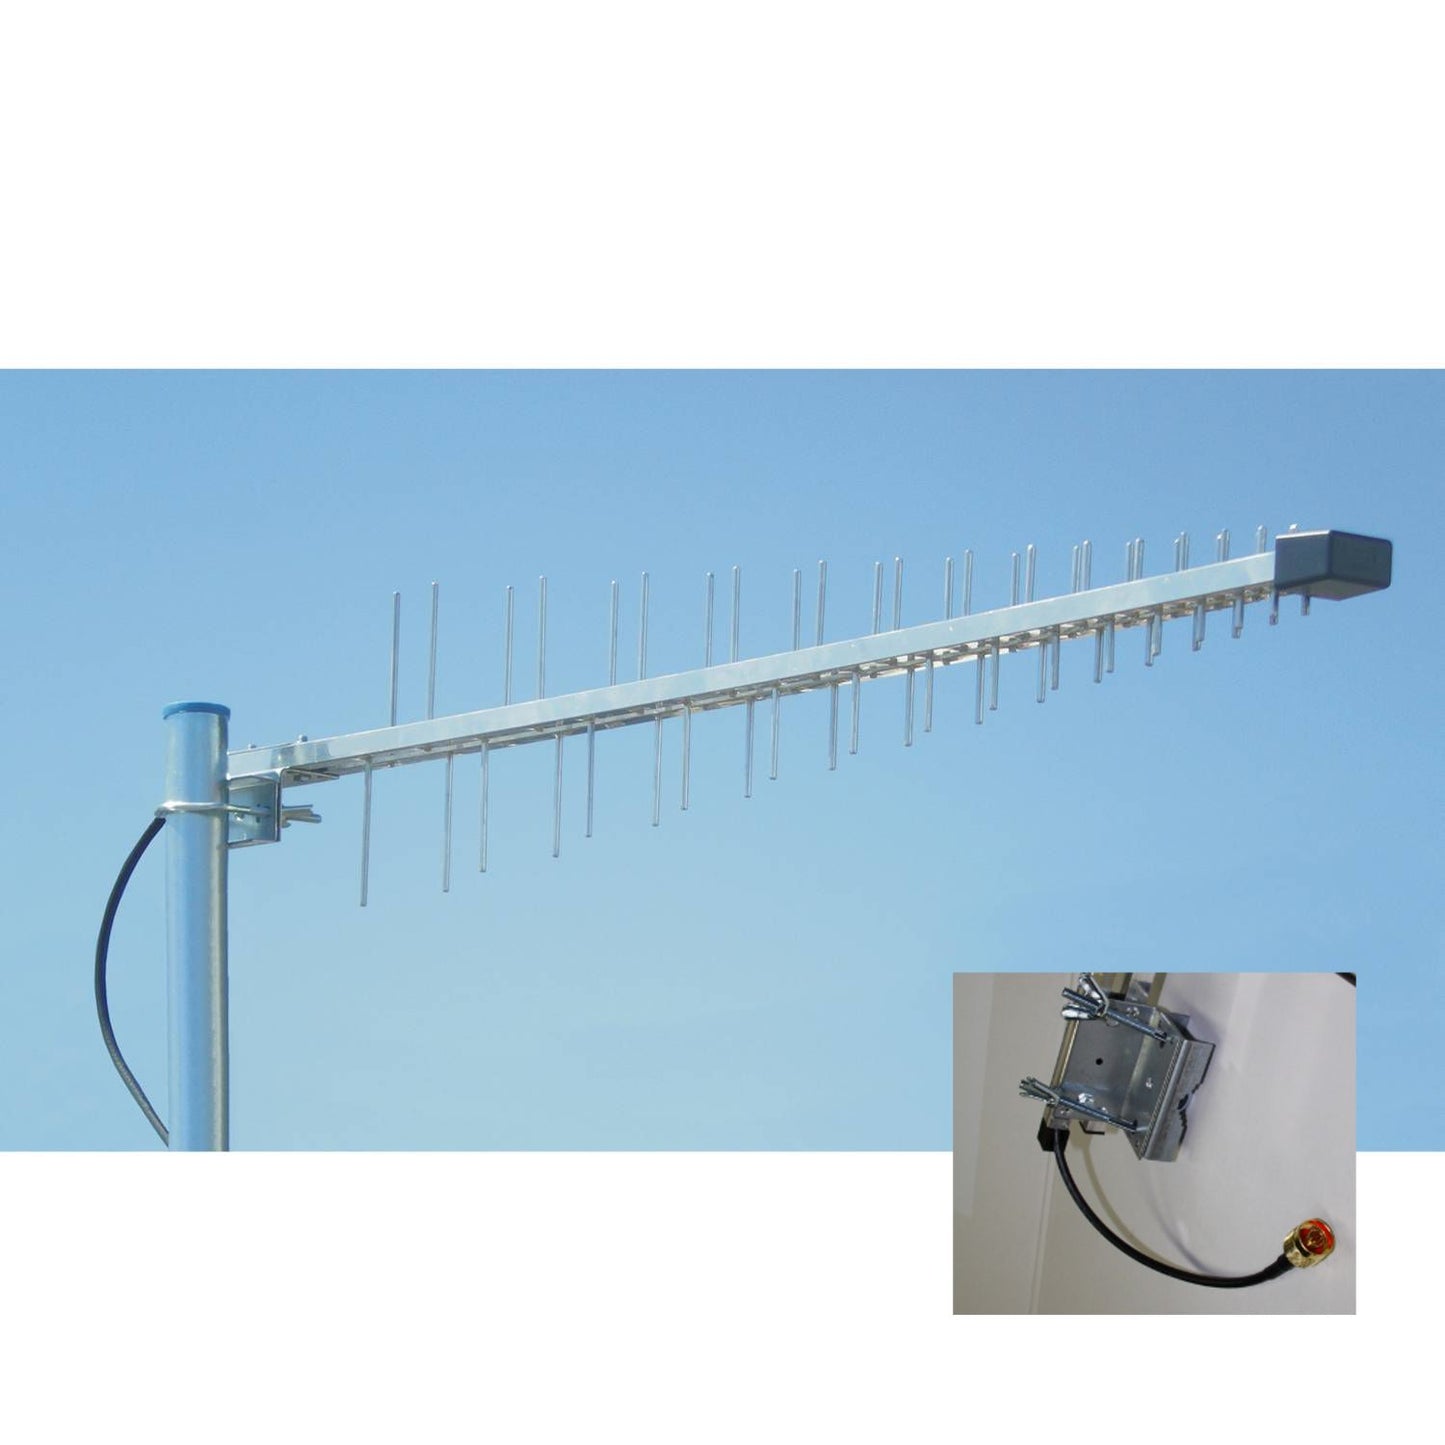 Wittenberg LAT 56 PRO-Line Universal-Antenne 790 - 2700 MHz, mit  N-Stecker